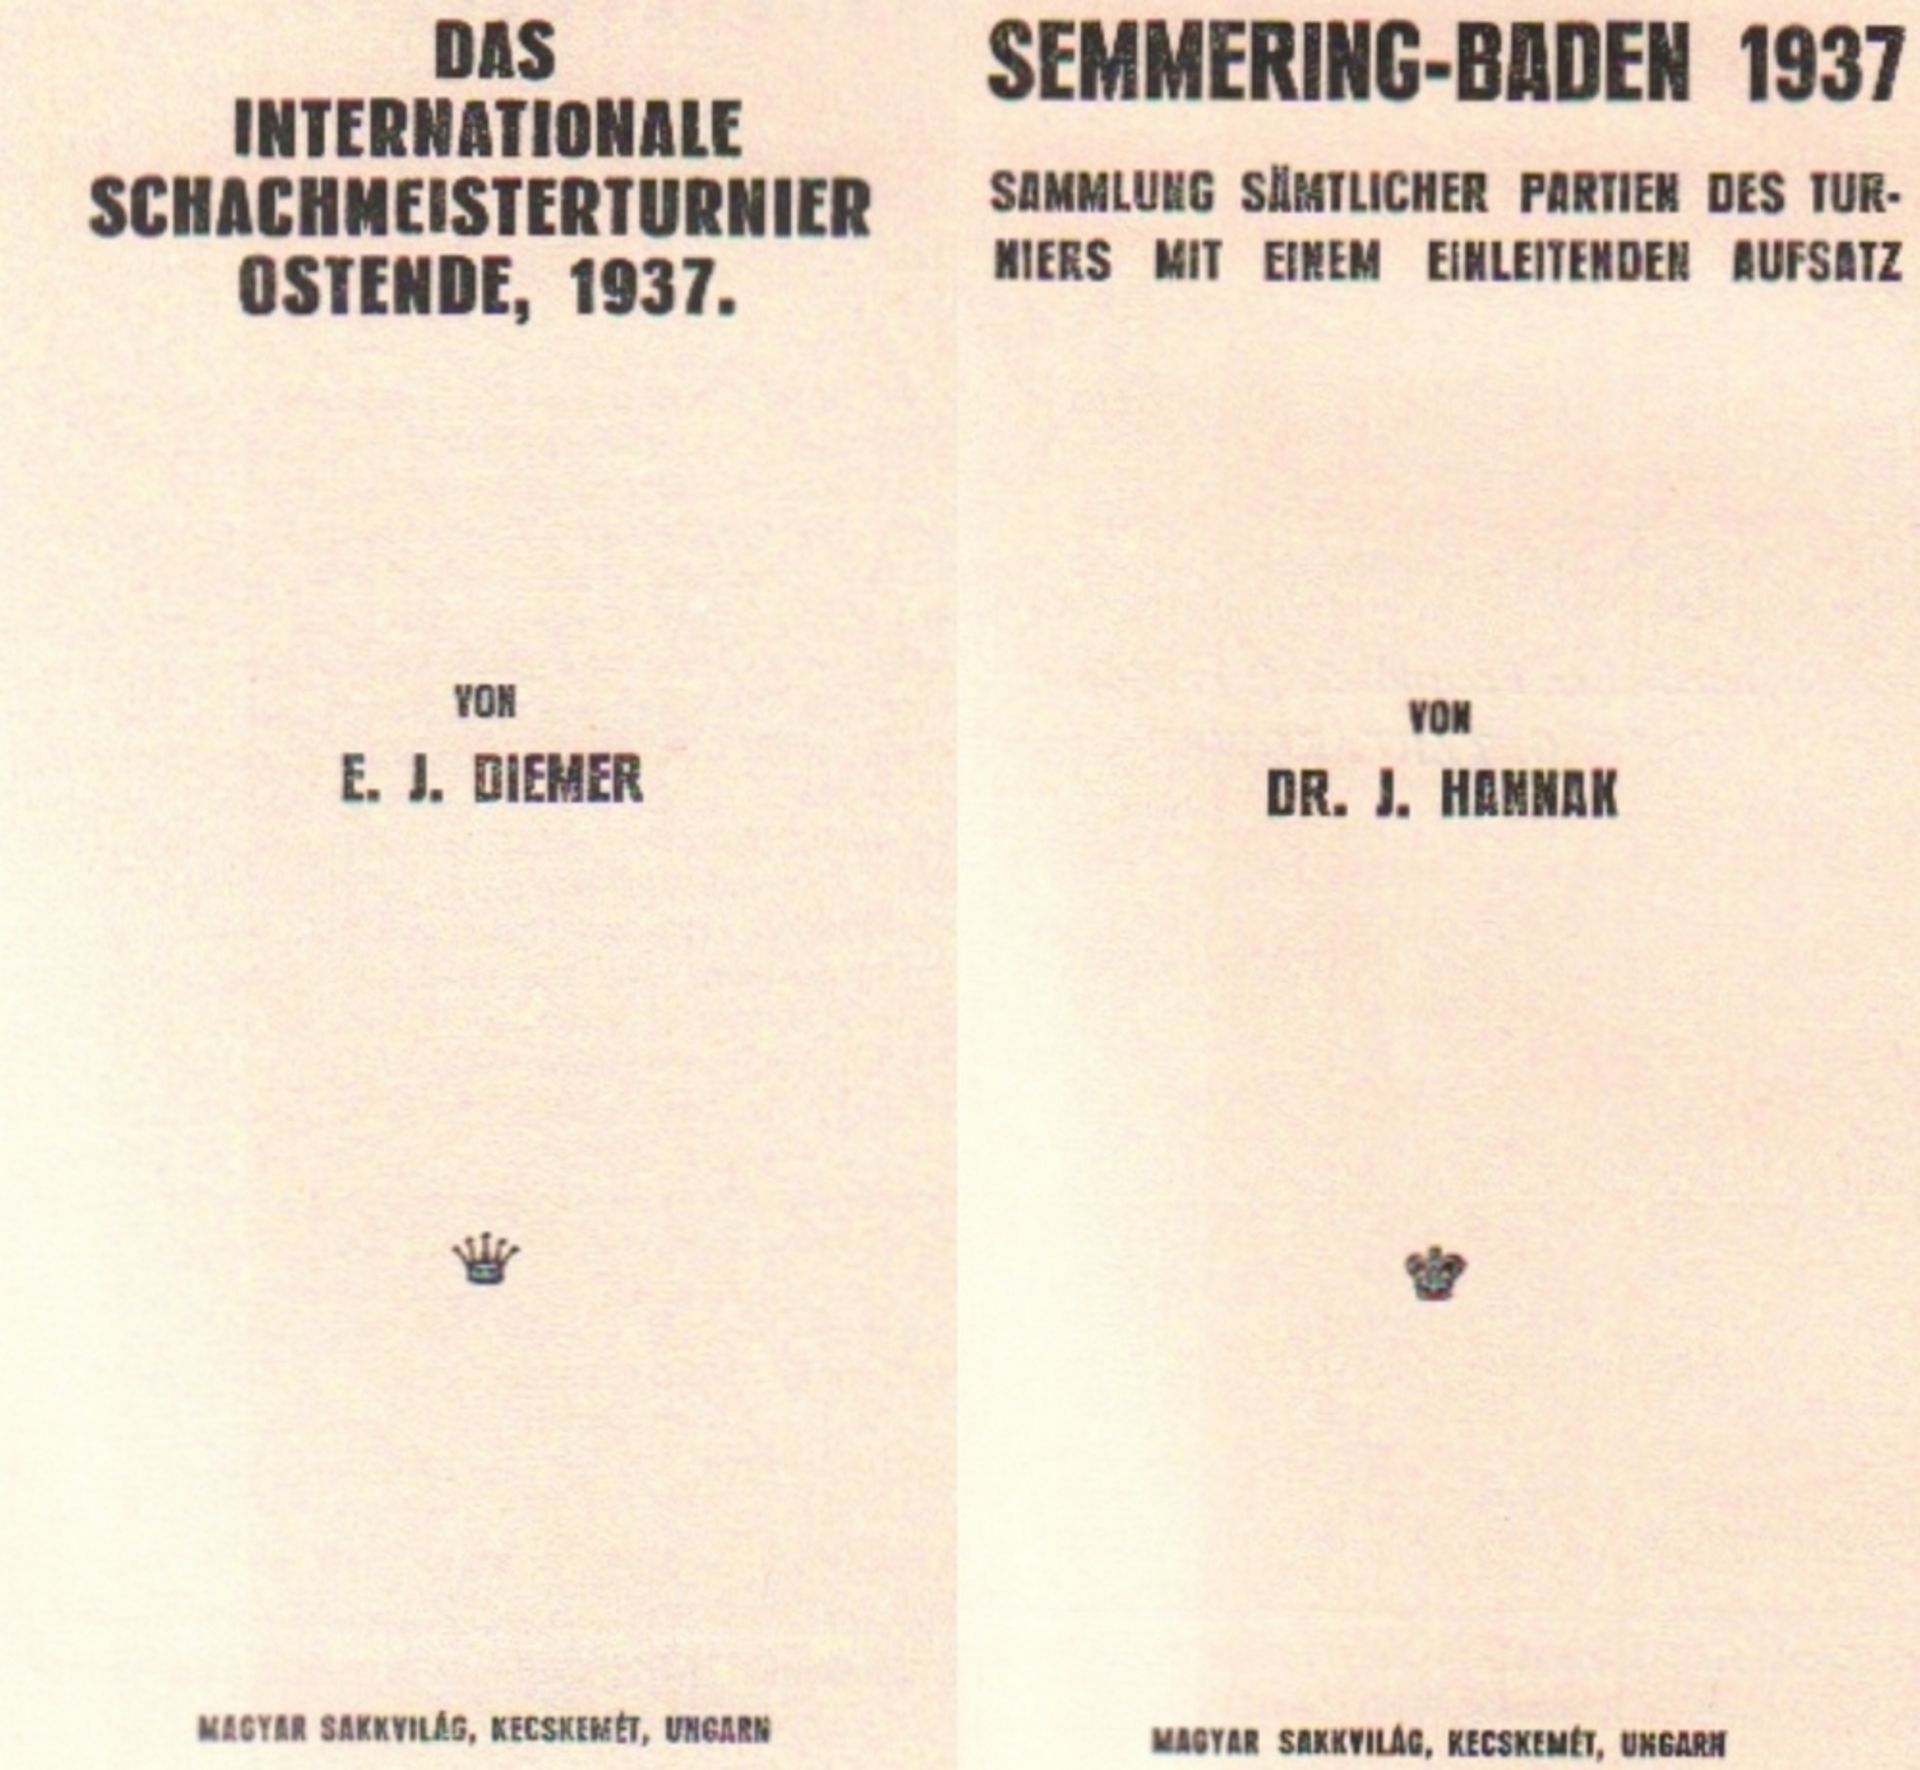 Ostende 1937. Diemer, E. J. Das internationale Schachmeisterturnier Ostende, 1937. Kecskemét, Magyar